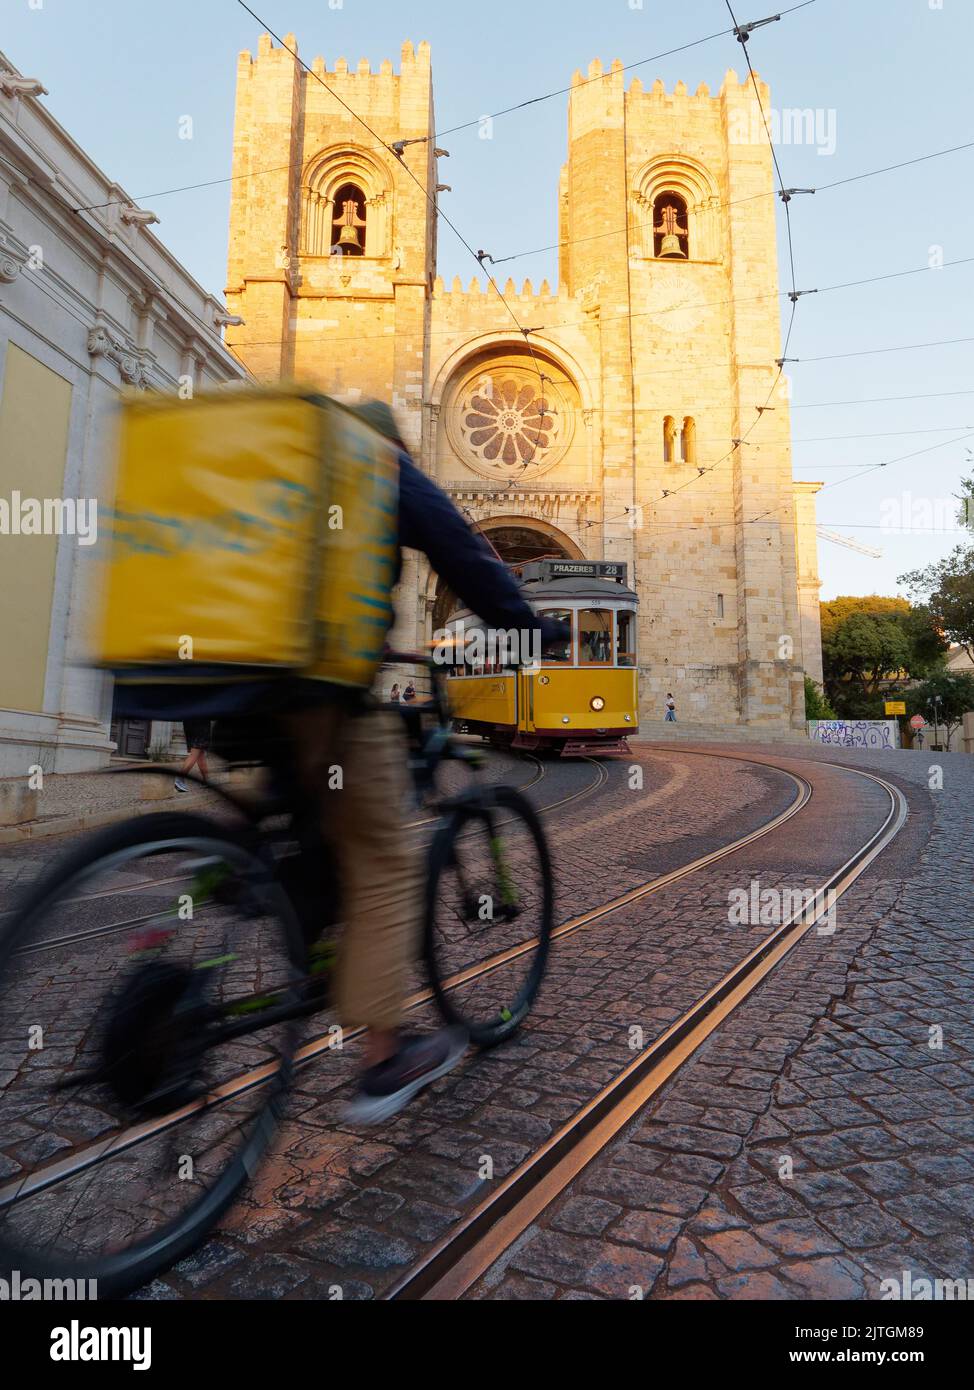 La Cathédrale Saint Mary Major alias la Cathédrale de Lisbonne (Sé de Lisboa). Tram et un cycliste de livraison avec un sac jaune à l'avant. Soirée de Summers. Banque D'Images